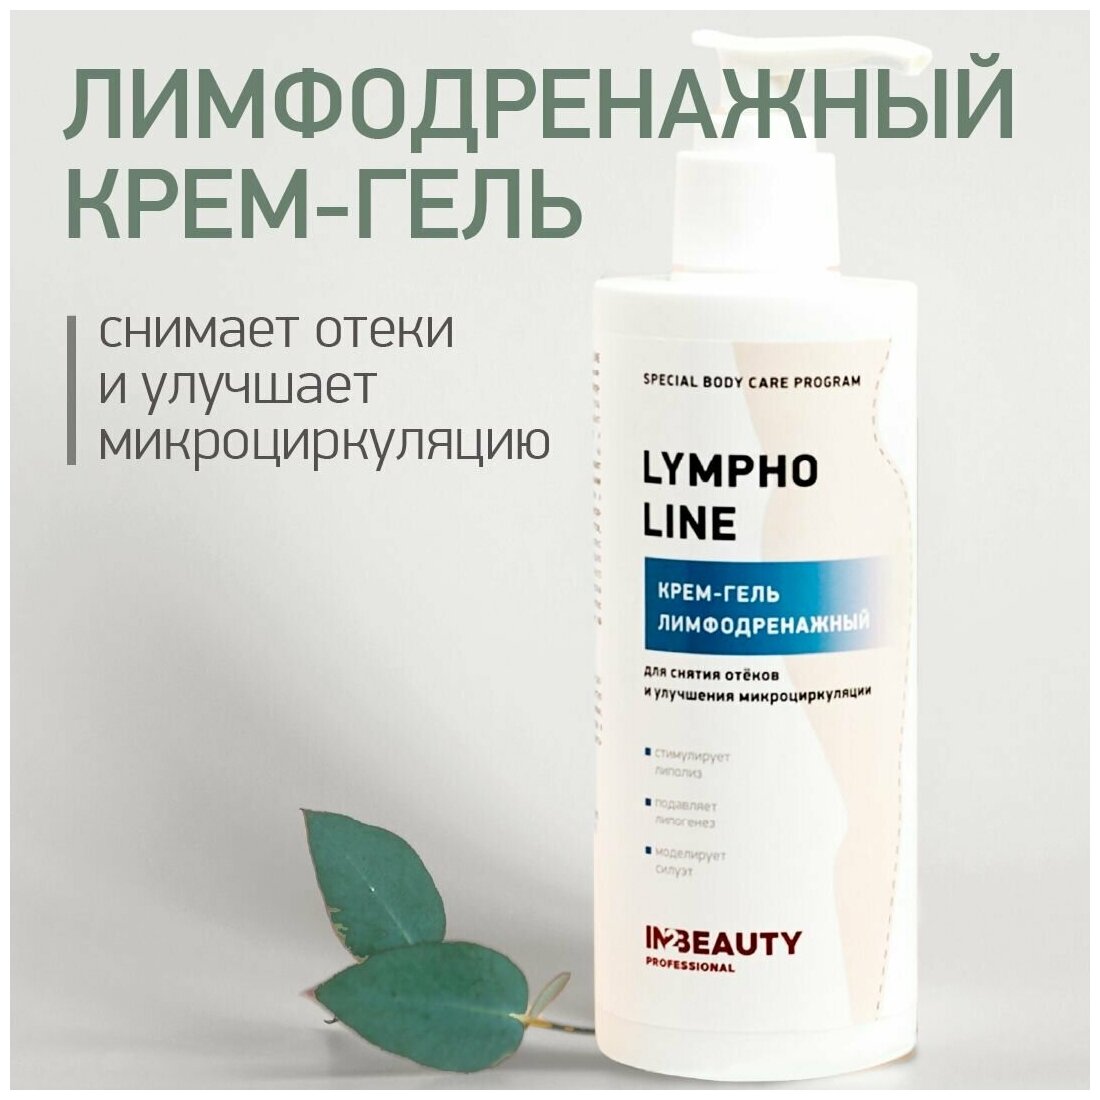 IN2BEAUTY Professional/ Крем для тела увлажняющий LYMPHO LINE для снятия отёков, для микроциркуляции, укрепление сосудов, 250мл с дозатором